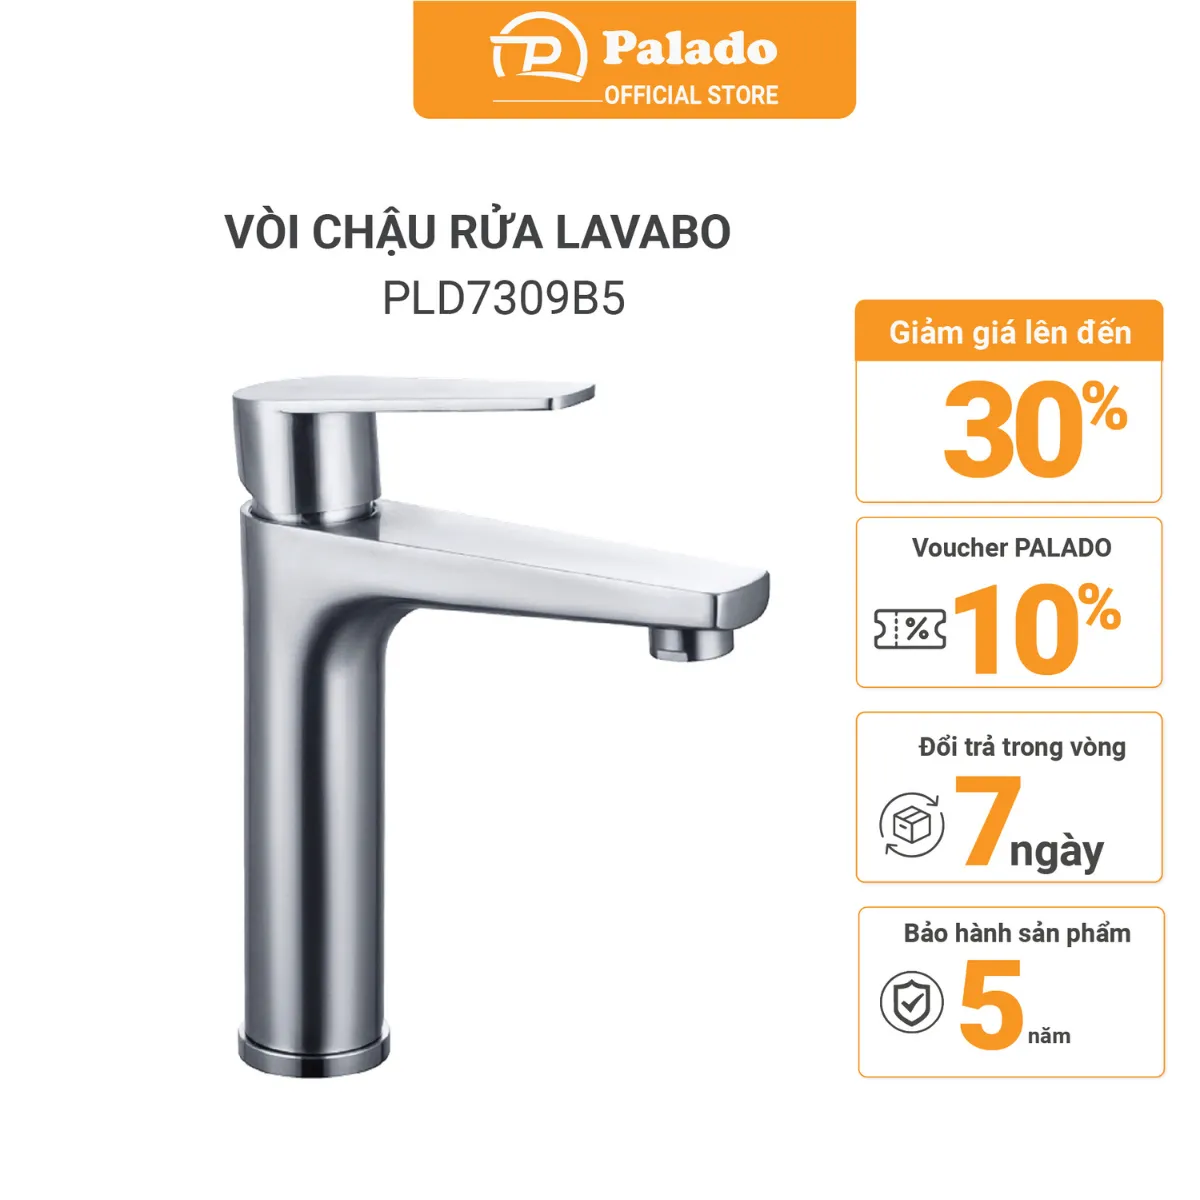 Sản phẩm vòi chậu rửa mặt PALADO PLD7309B5 cung cấp một chính sách bảo hành rất hấp dẫn.